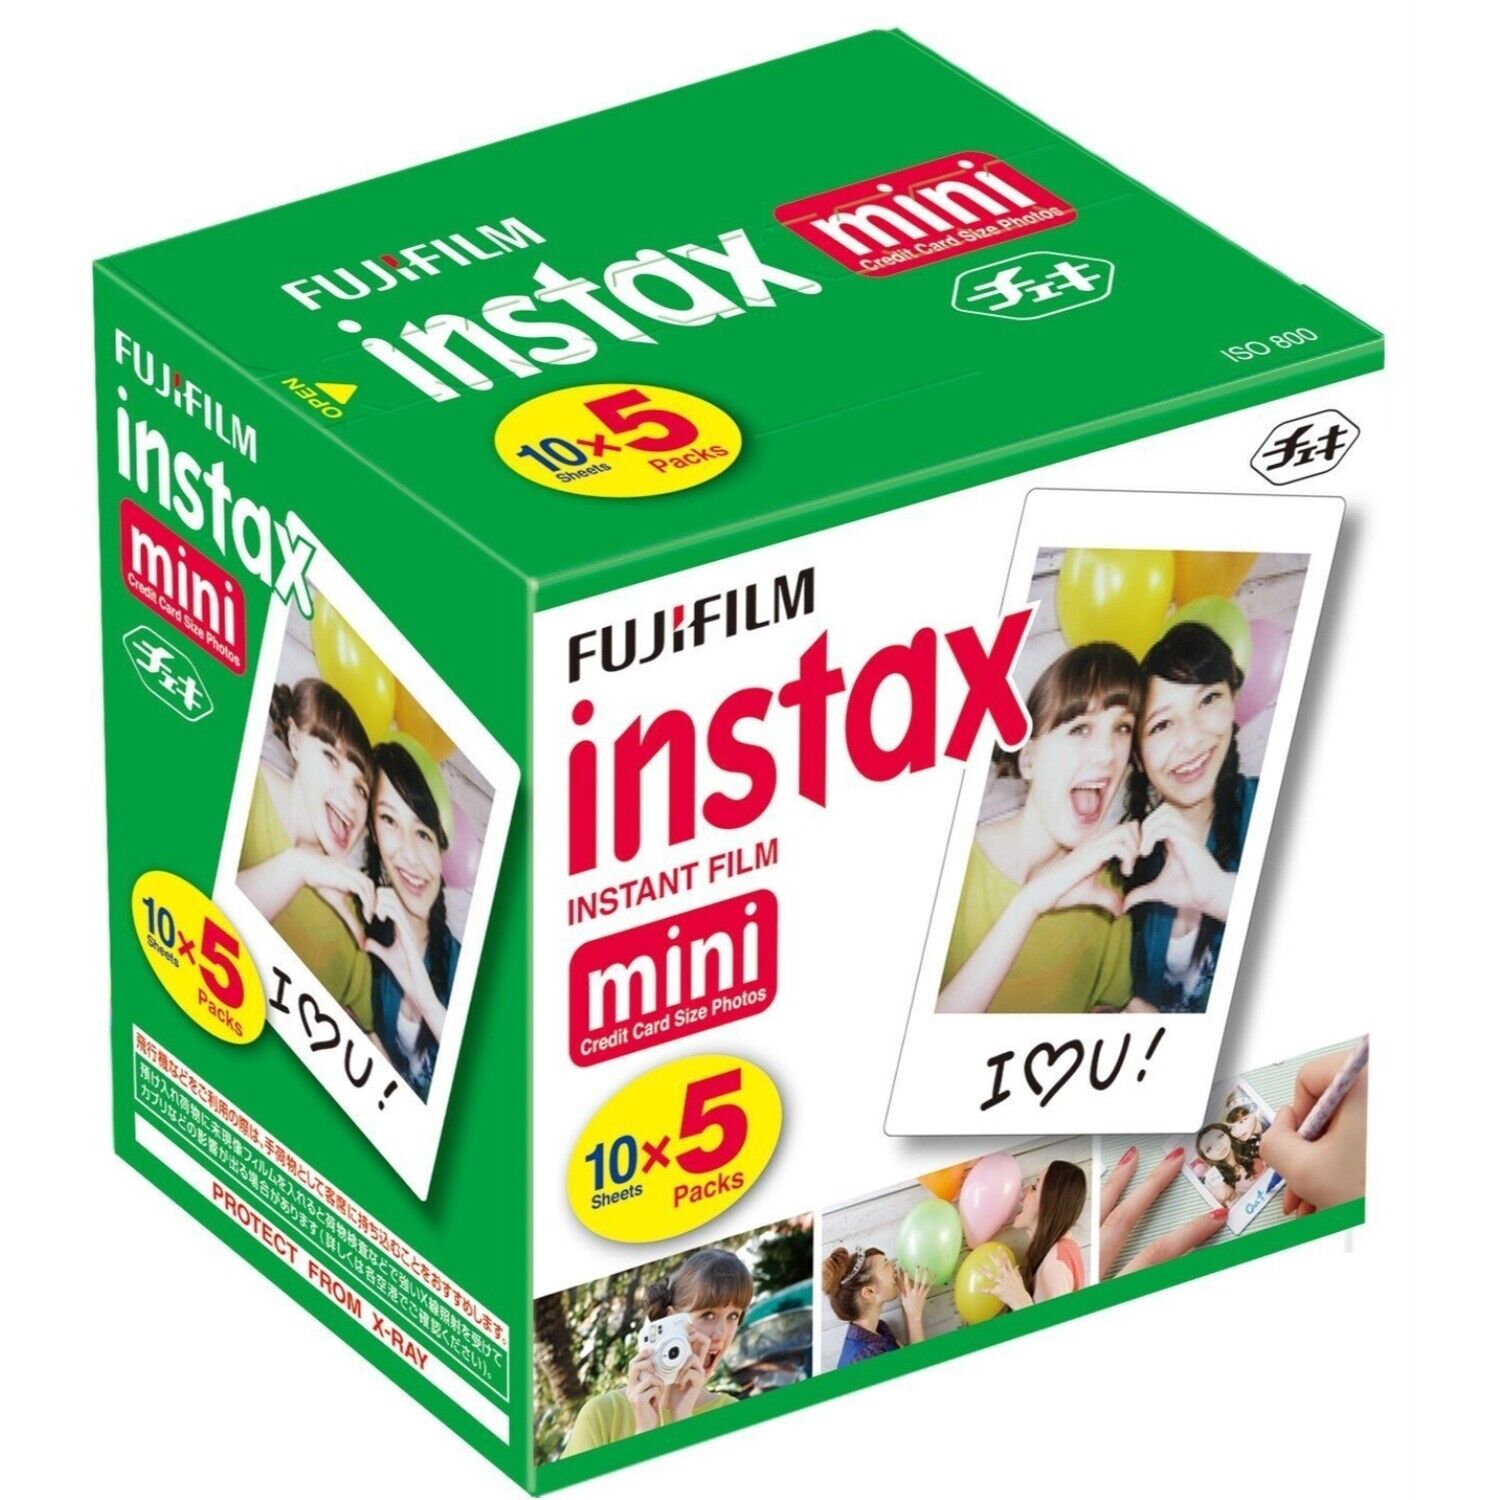 Fujifilm Instax Mini Instant Film 10 Sheets x 5 Packs For All Fuji Mini 8 Camera Fujifilm 96090